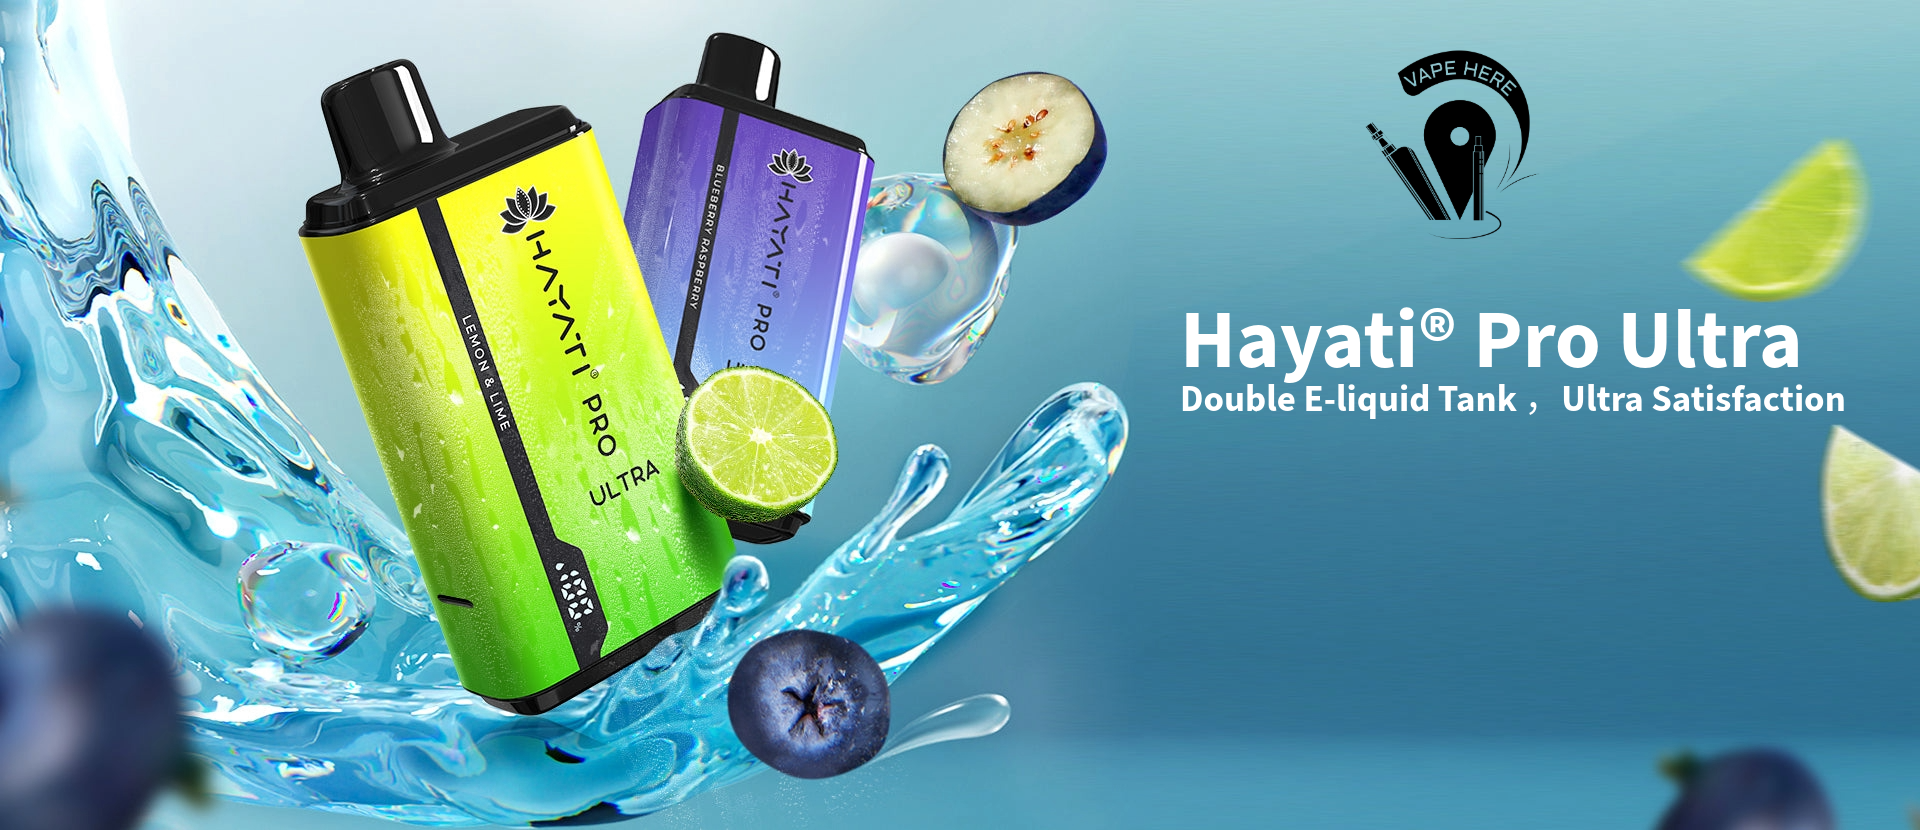 Hayati Pro Ultra 15000 Puffs Disposable Vape 20mg UAE Dubai